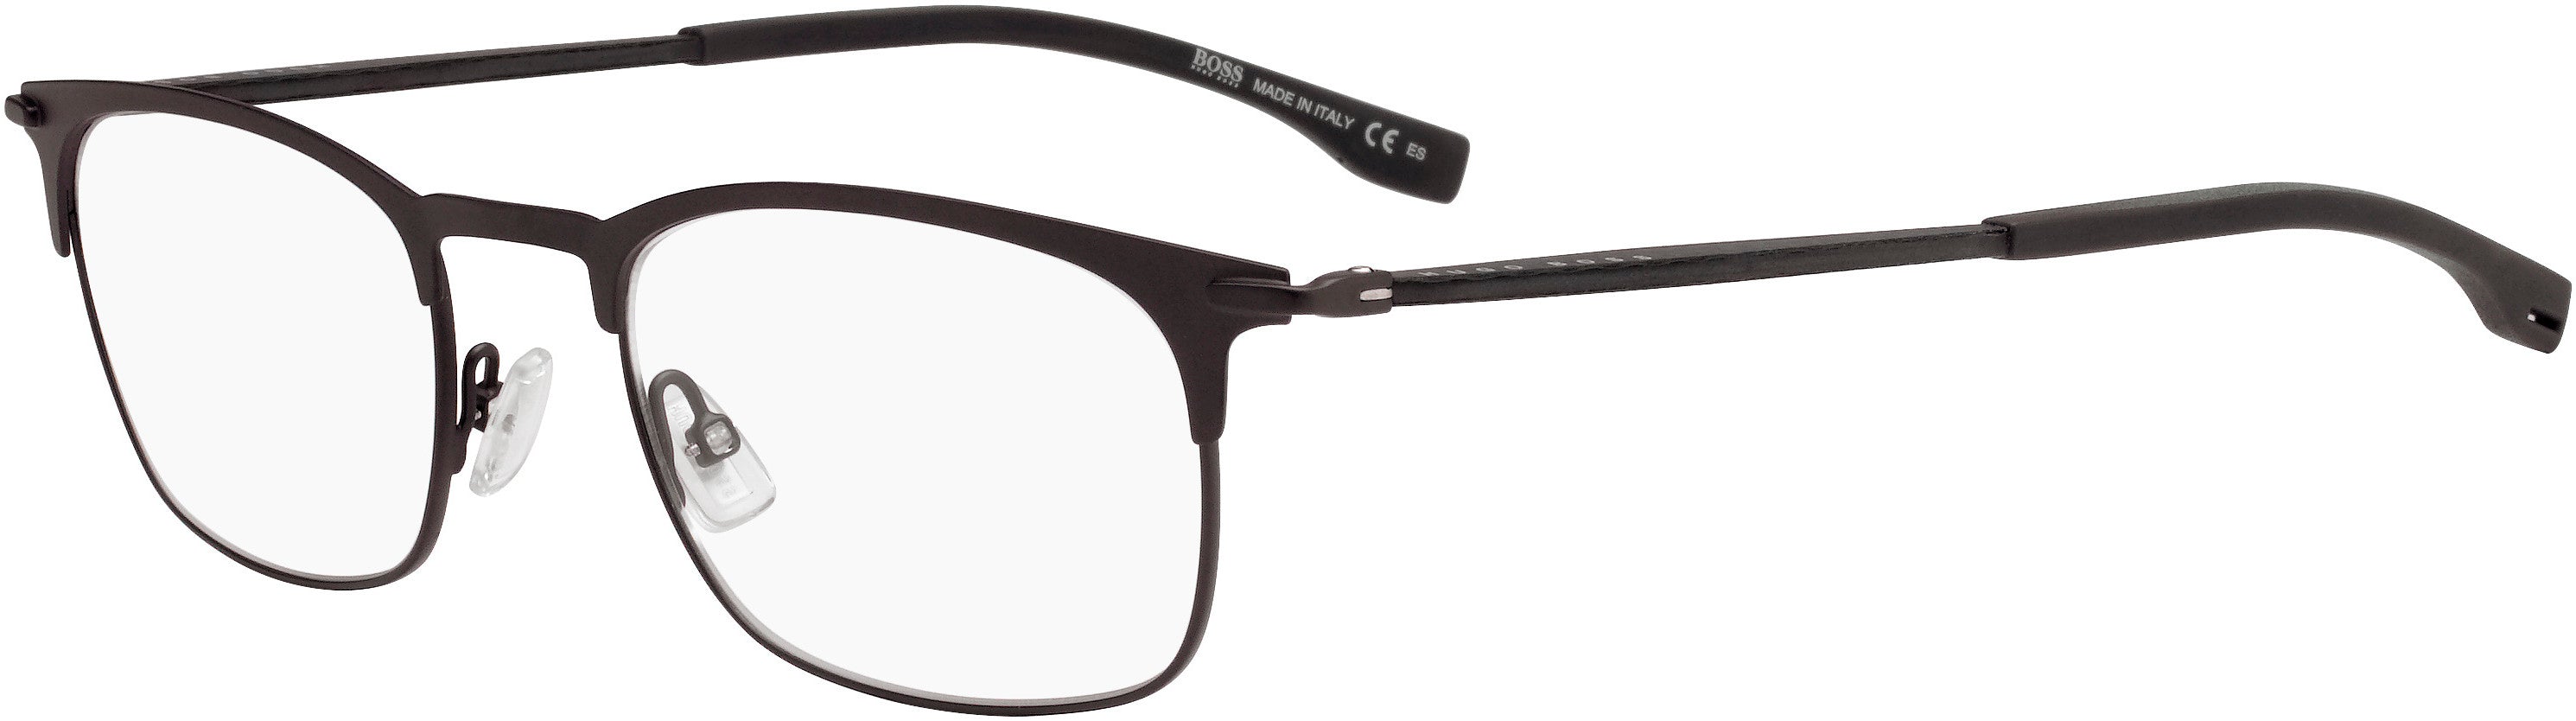 Boss (hub) Boss 1018 Rectangular Eyeglasses 04IN-04IN  Matte Brown (00 Demo Lens)